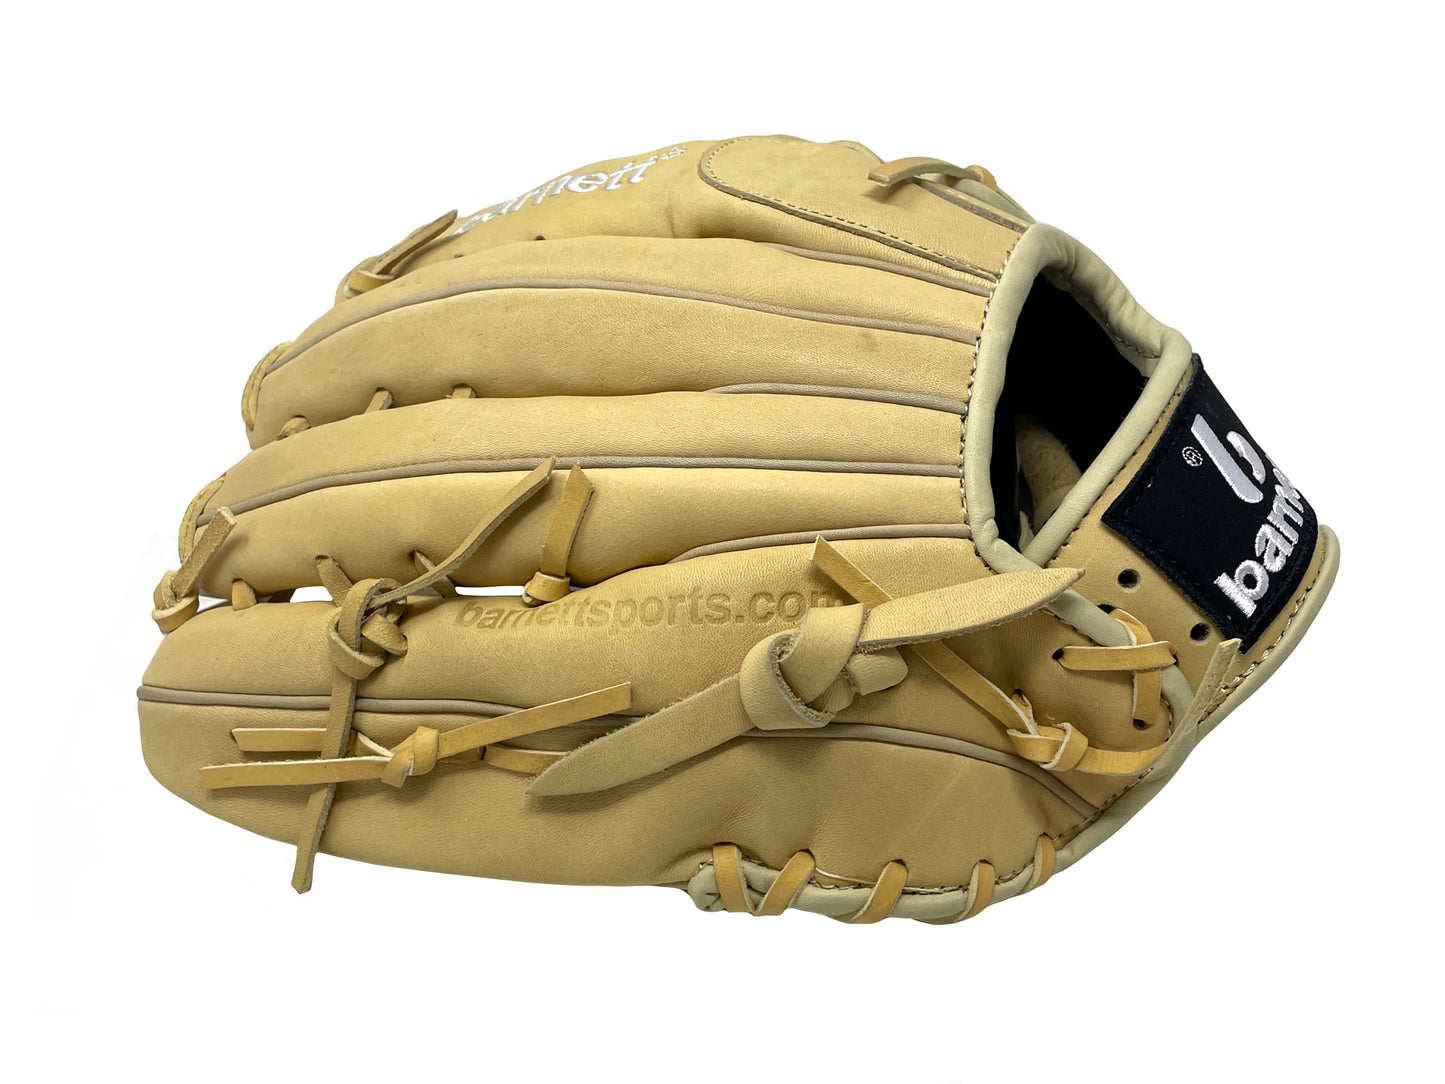 FL-127 Vysoce kvalitní kožené ba0seballové rukavice infield /outfield /pitcher, béžová